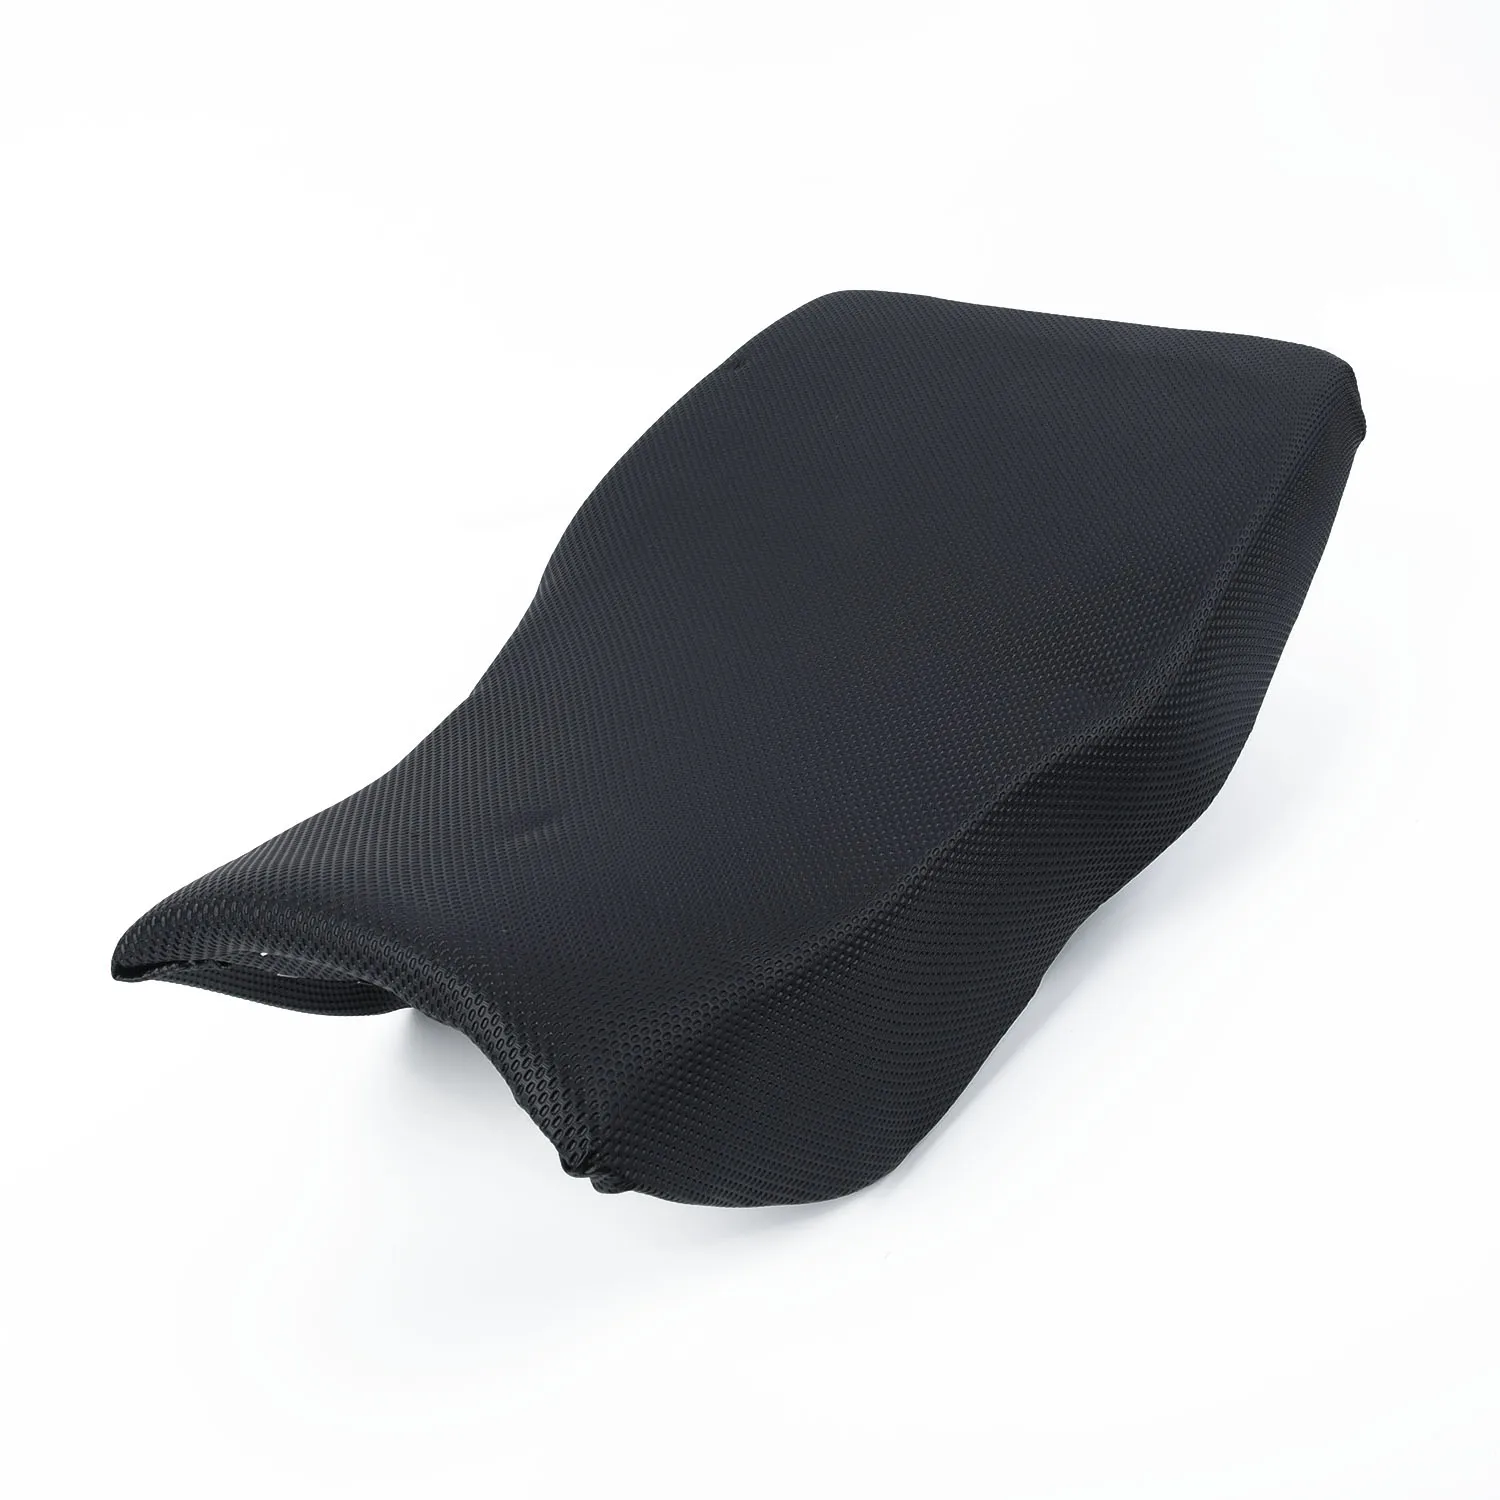 Черная подушка для сиденья, подходит для китайского квадроцикла/квадроцикла, подушка для сиденья 50cc 70cc 90cc 110cc 150cc 460*270 мм, подушка для сиденья